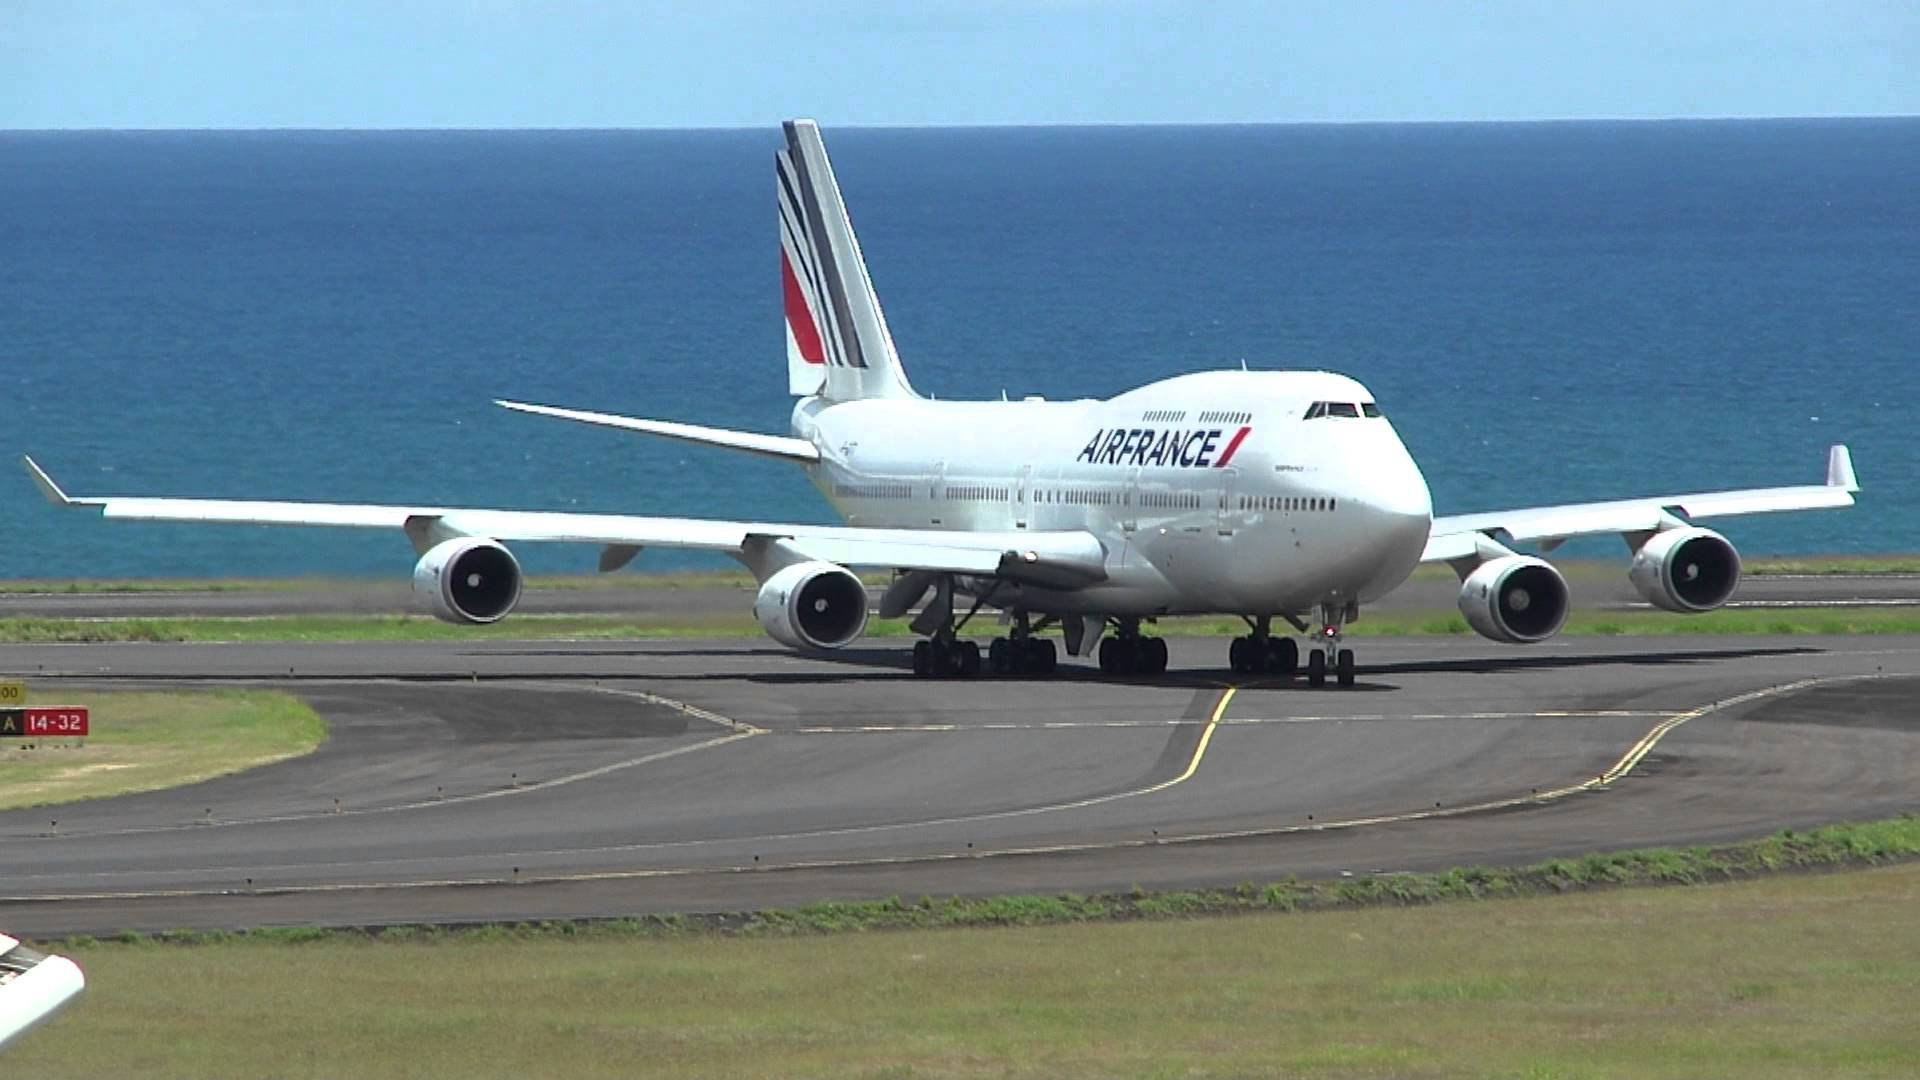 Airfrance Boeing 747-400 En La Pista De Despegue Fondo de pantalla